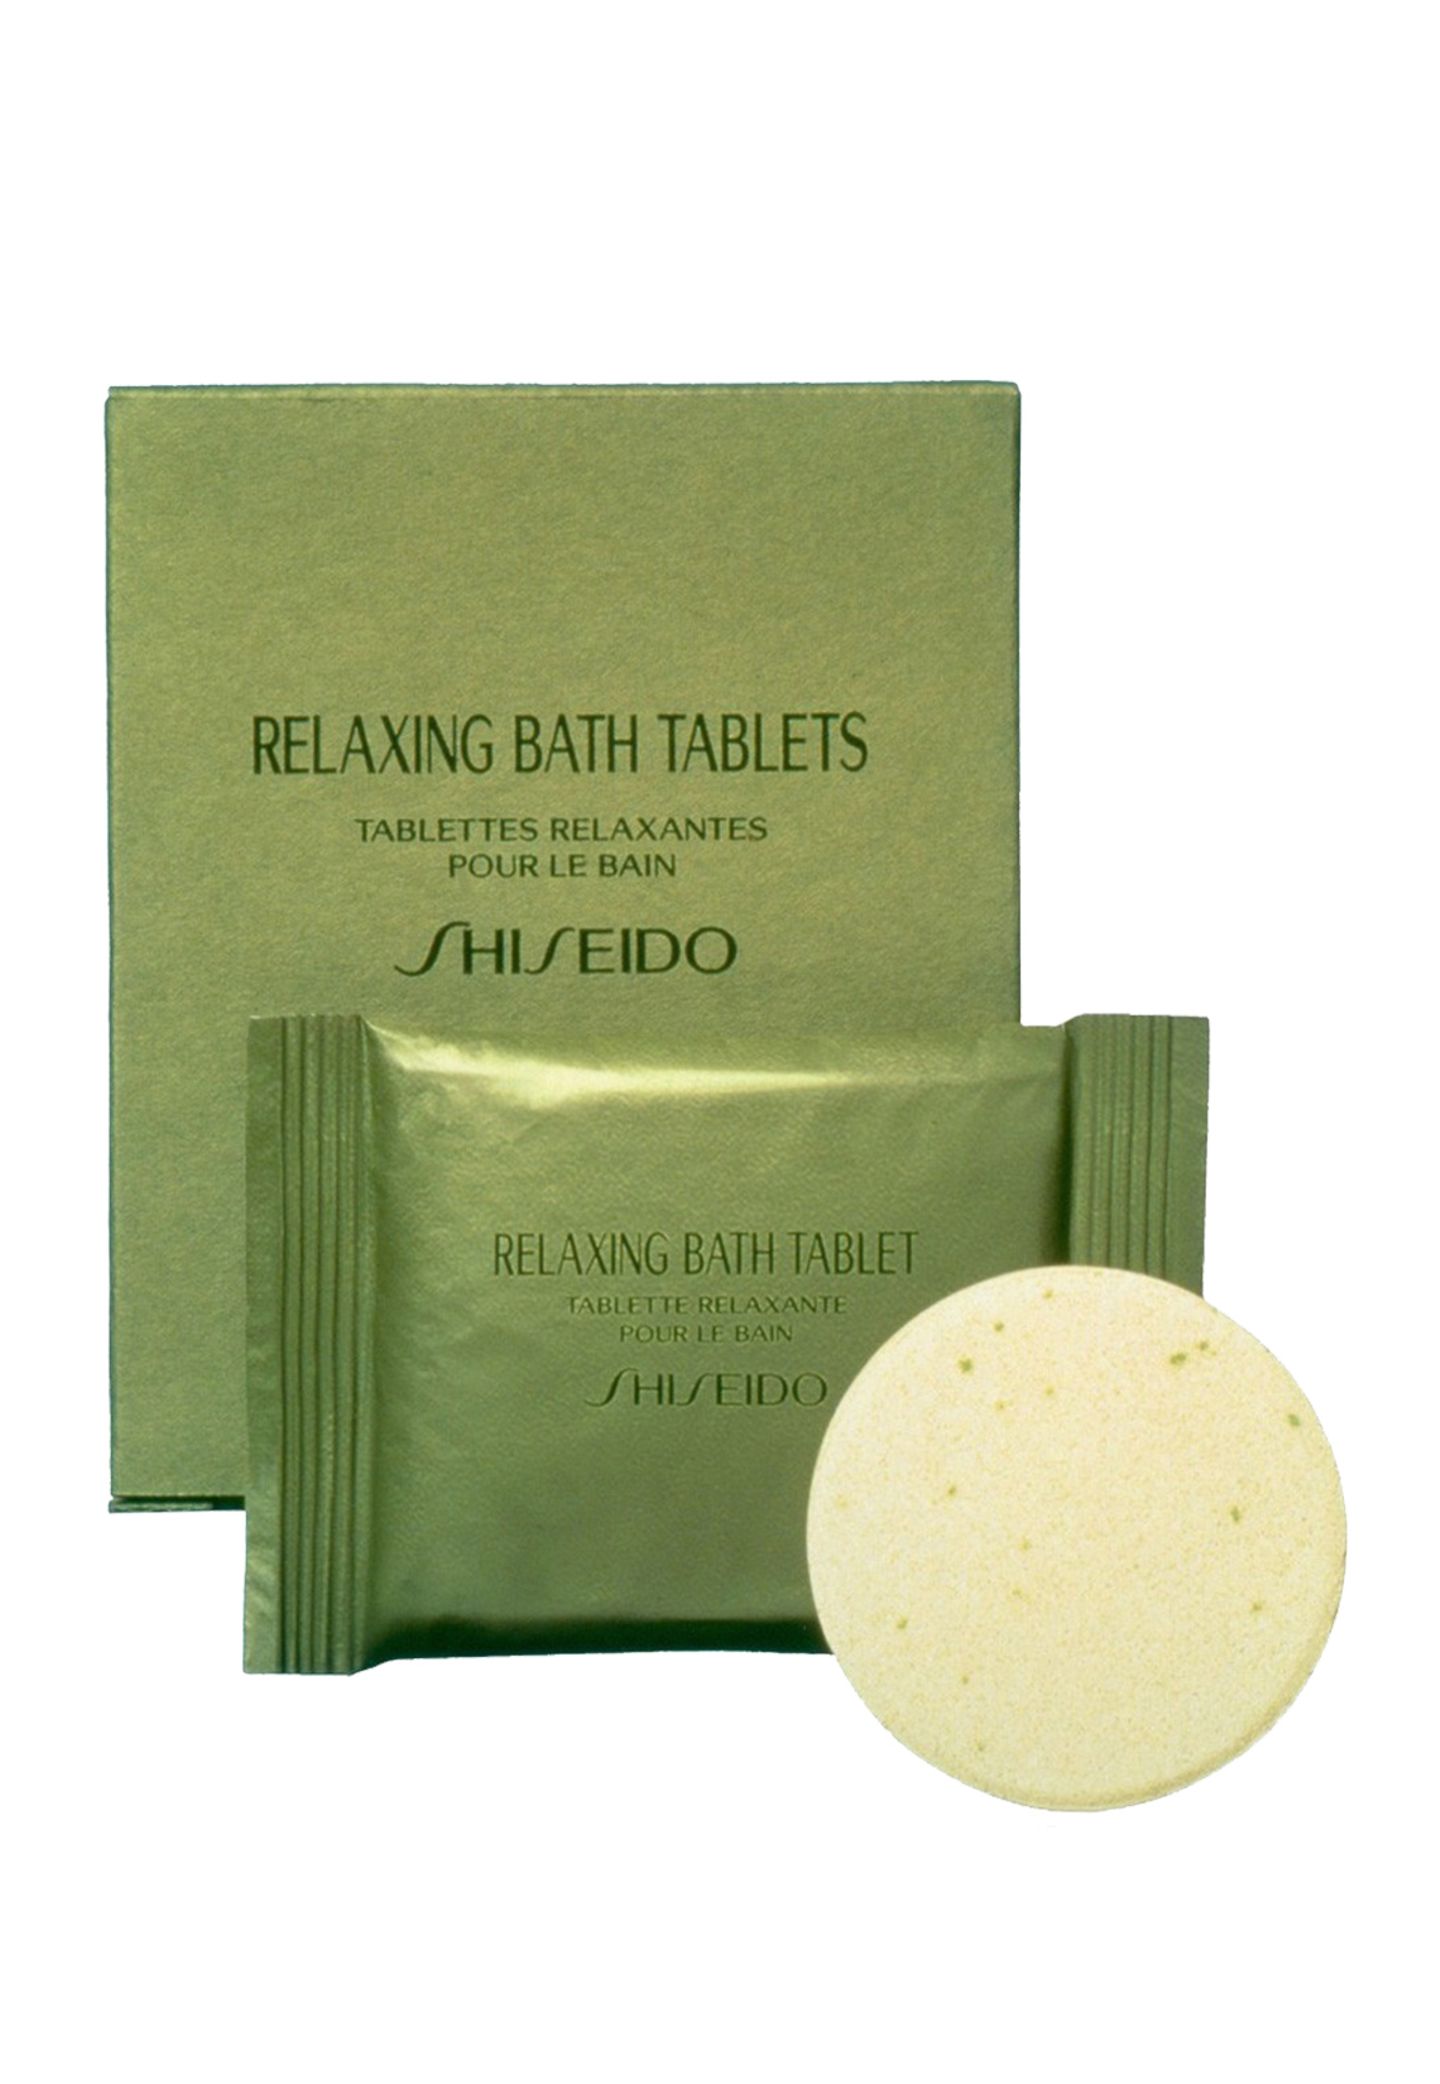 Baden mit dem Blubb: "Relaxing Bath Tablet" von Shiseido, 8 Stück, ca. 23 Euro